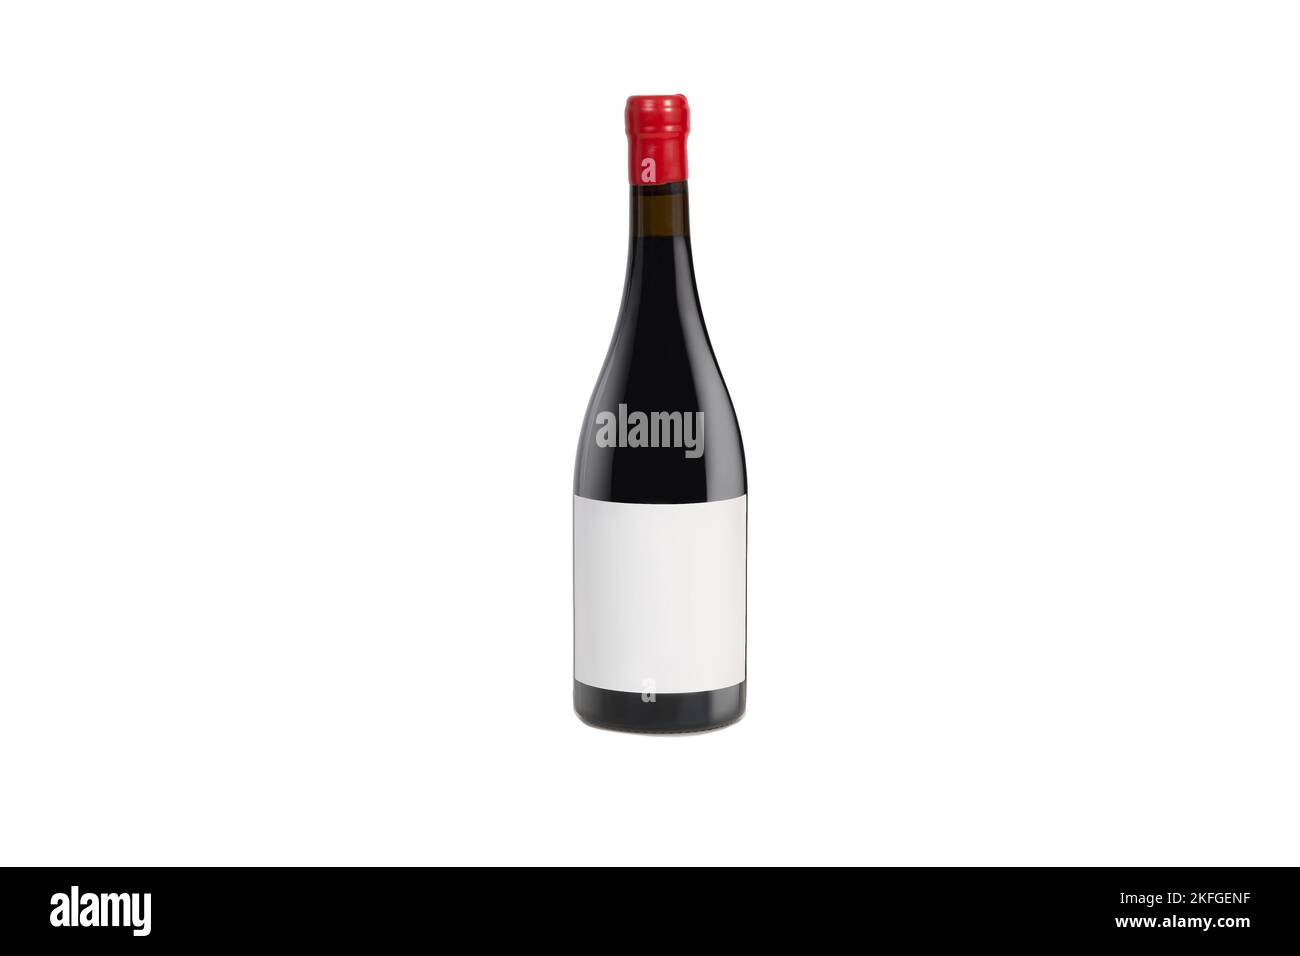 Isolierte Flasche Wein oder Champagner mit leerem Etikett und rotem Stopfen. Stockfoto